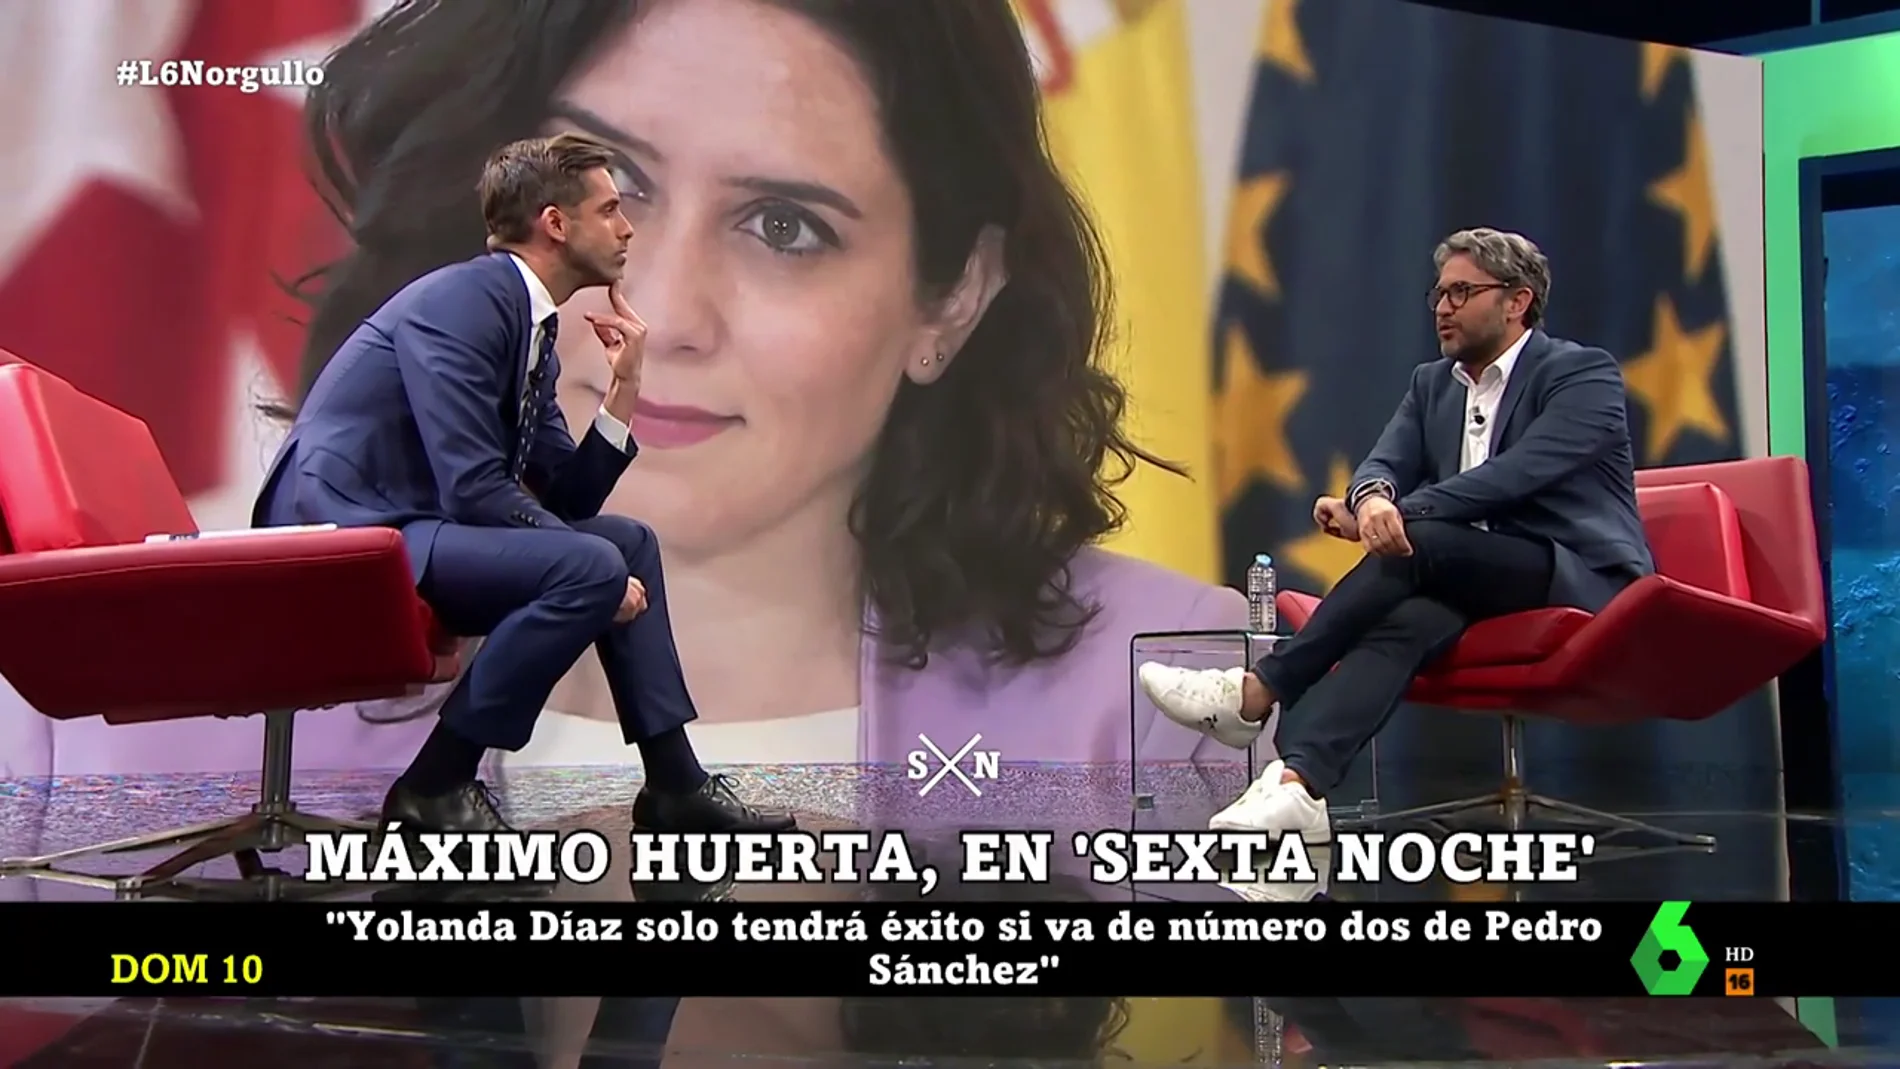 Máximo Huerta responde contundente sobre Díaz Ayuso: "No me gusta jugar a dar protagonismo a una parte de este país; como diría Rajoy, soy muy español y mucho español"